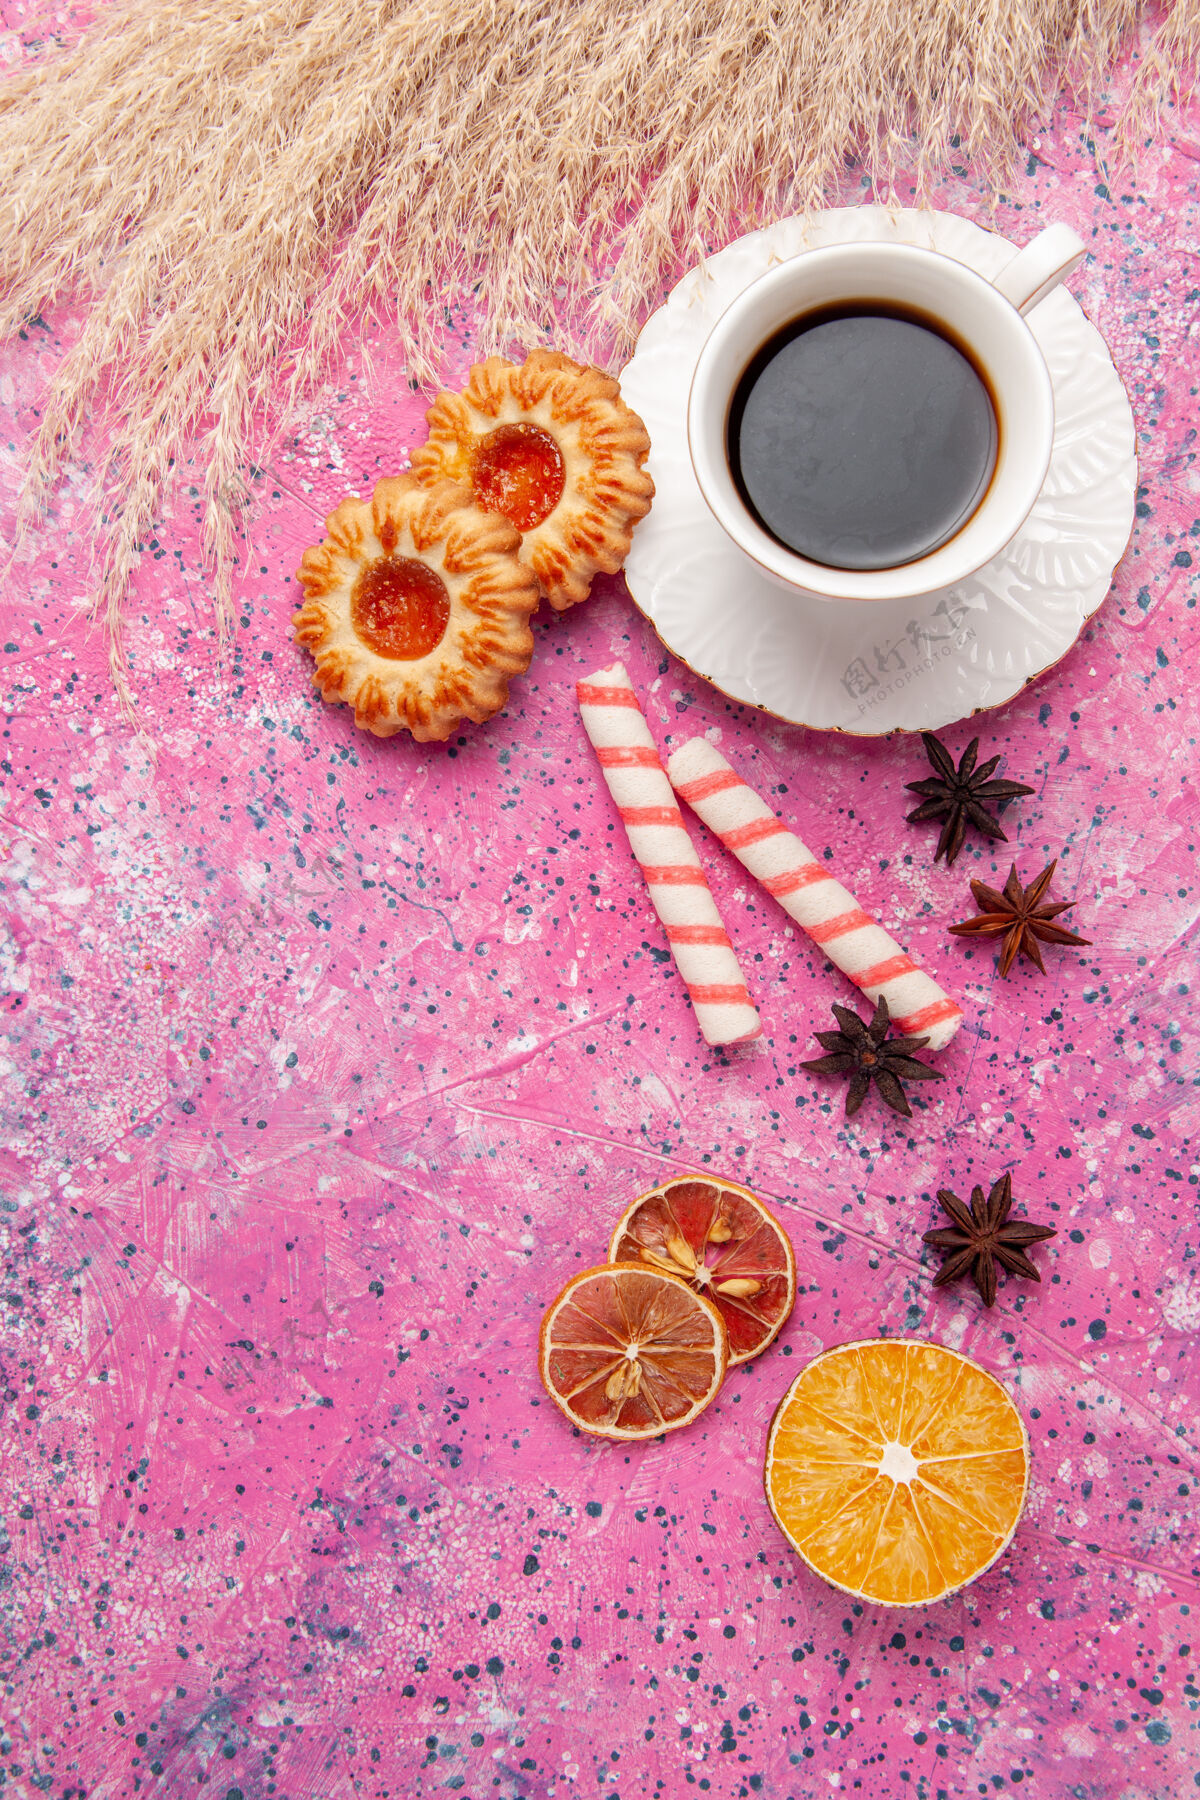 饼干俯瞰一杯茶 桌上放着粉红色的饼干饼干饼干糖甜甜的颜色花卉饼干视图